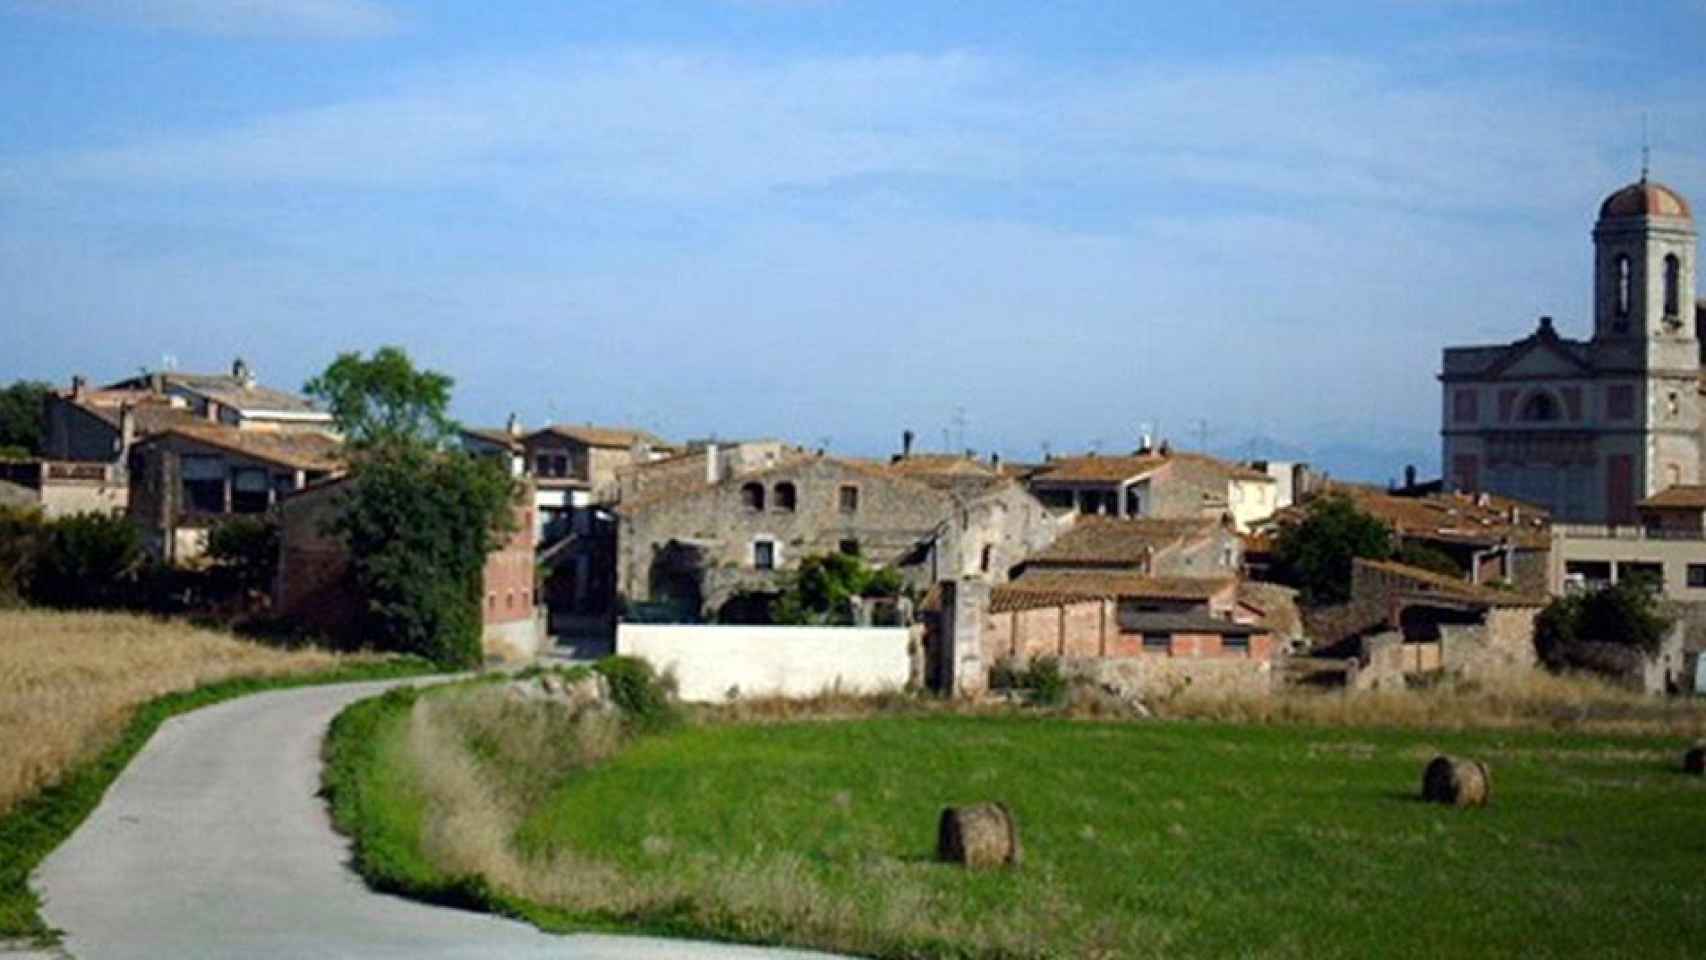 Vistas de la localidad de Sant Joan de Mollet / CG